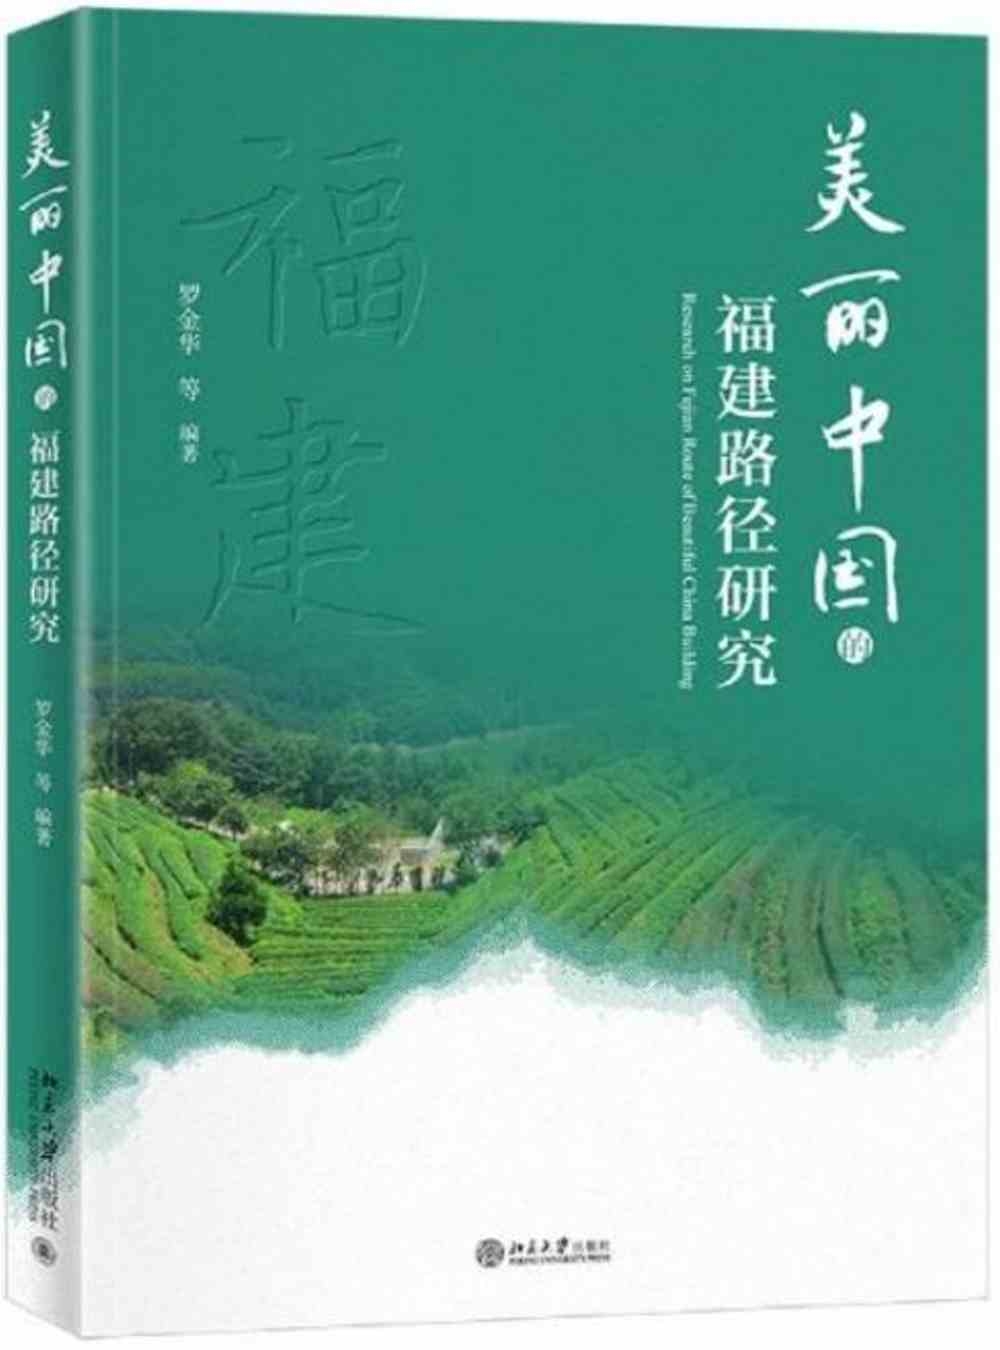 美麗中國的福建路徑研究